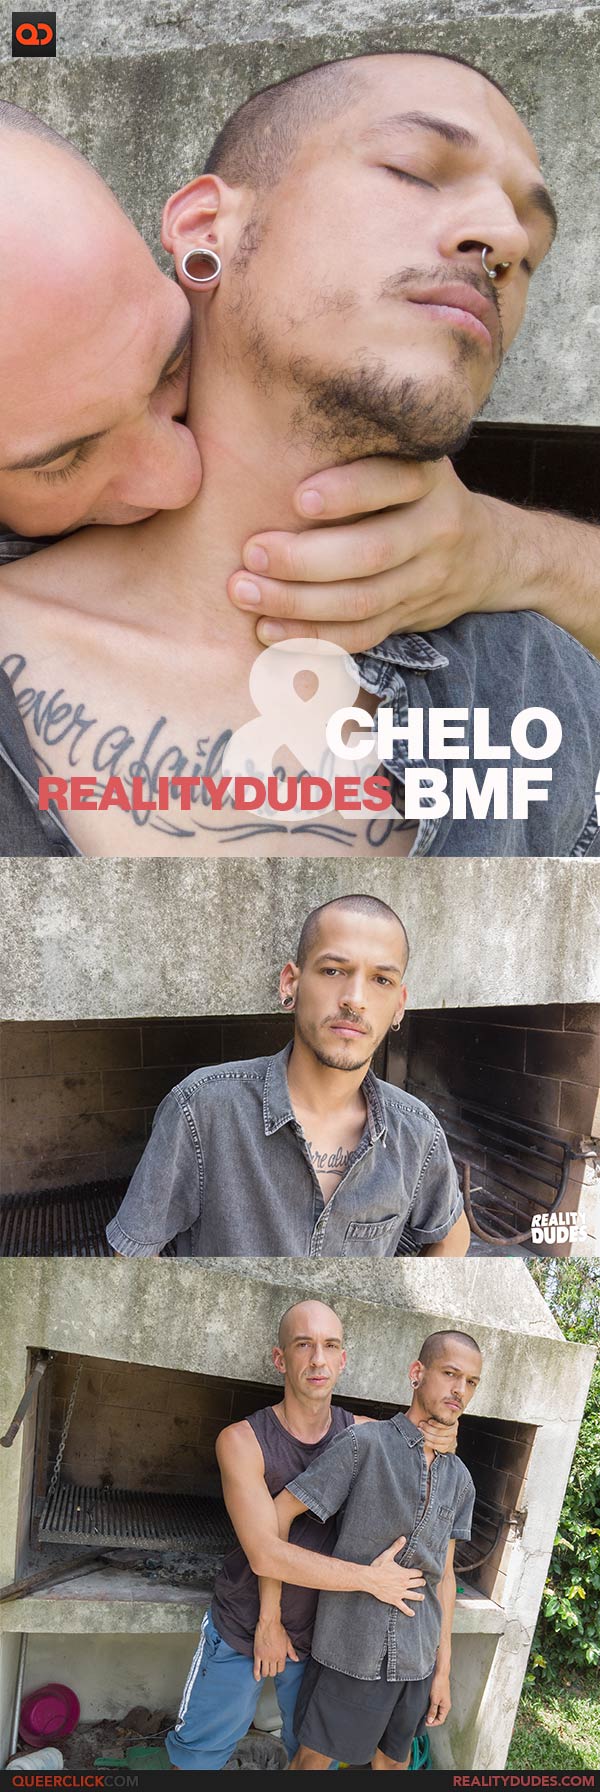 RealityDudes: Chelo and BMF